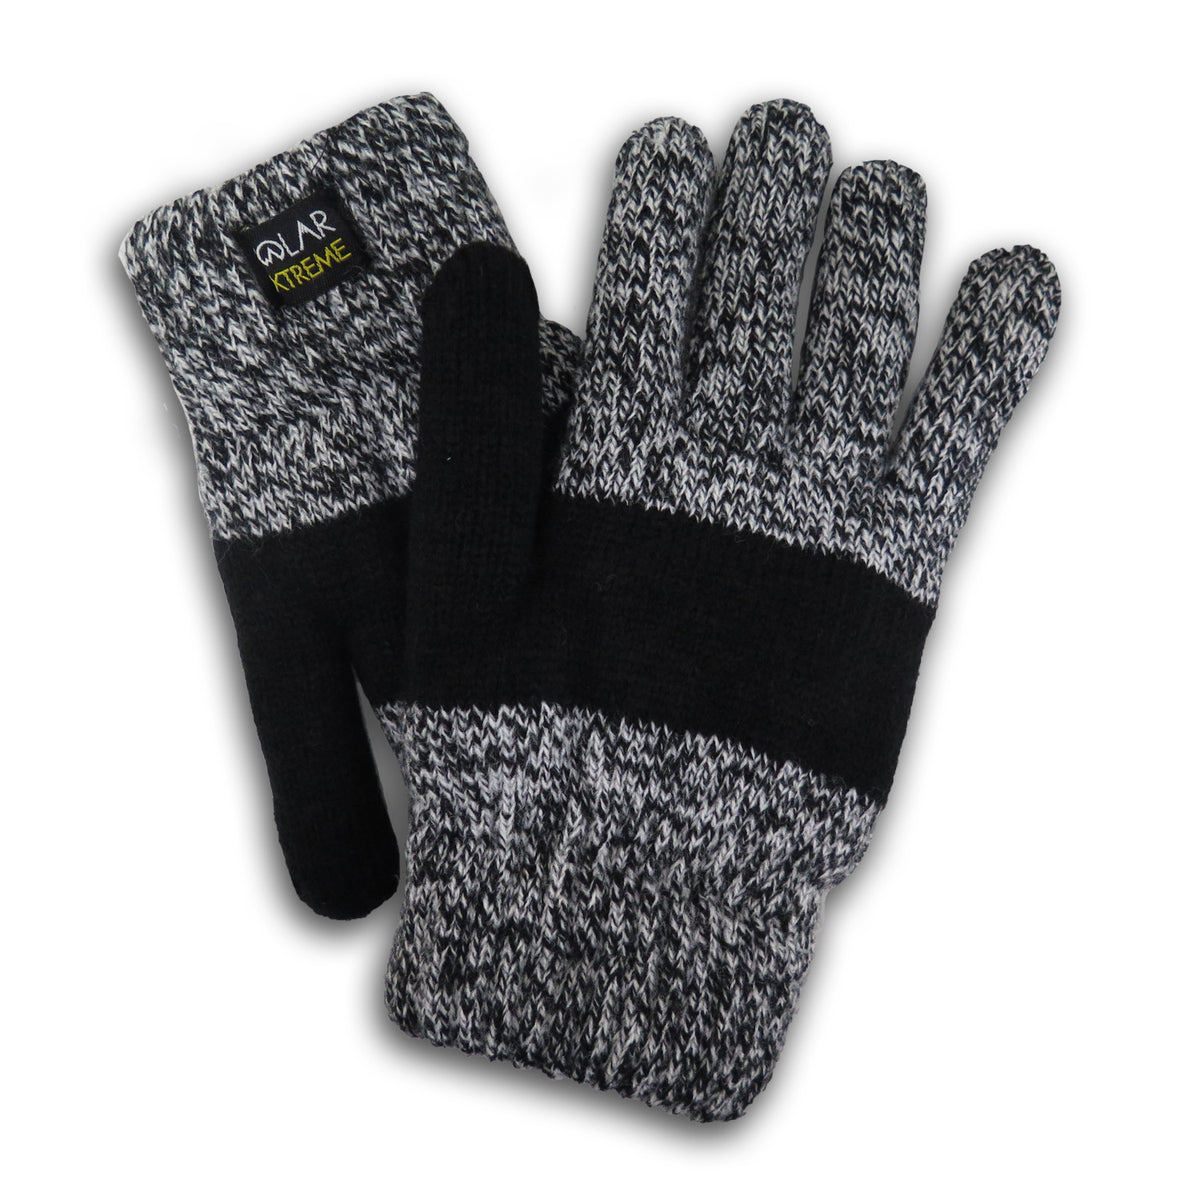 super warm women's gloves